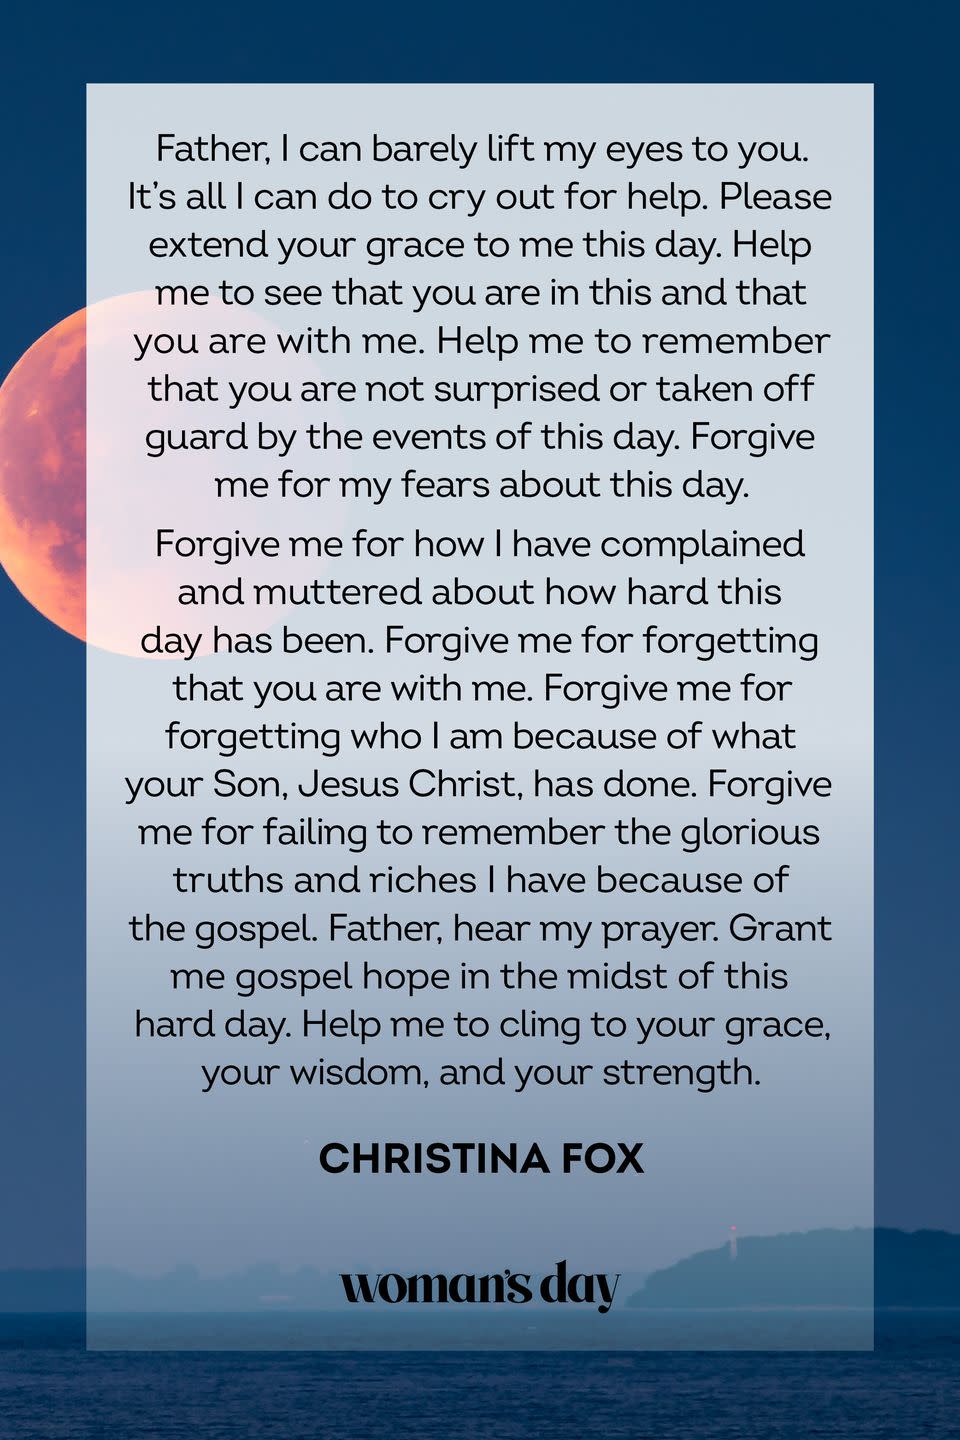 A Prayer for Forgiveness